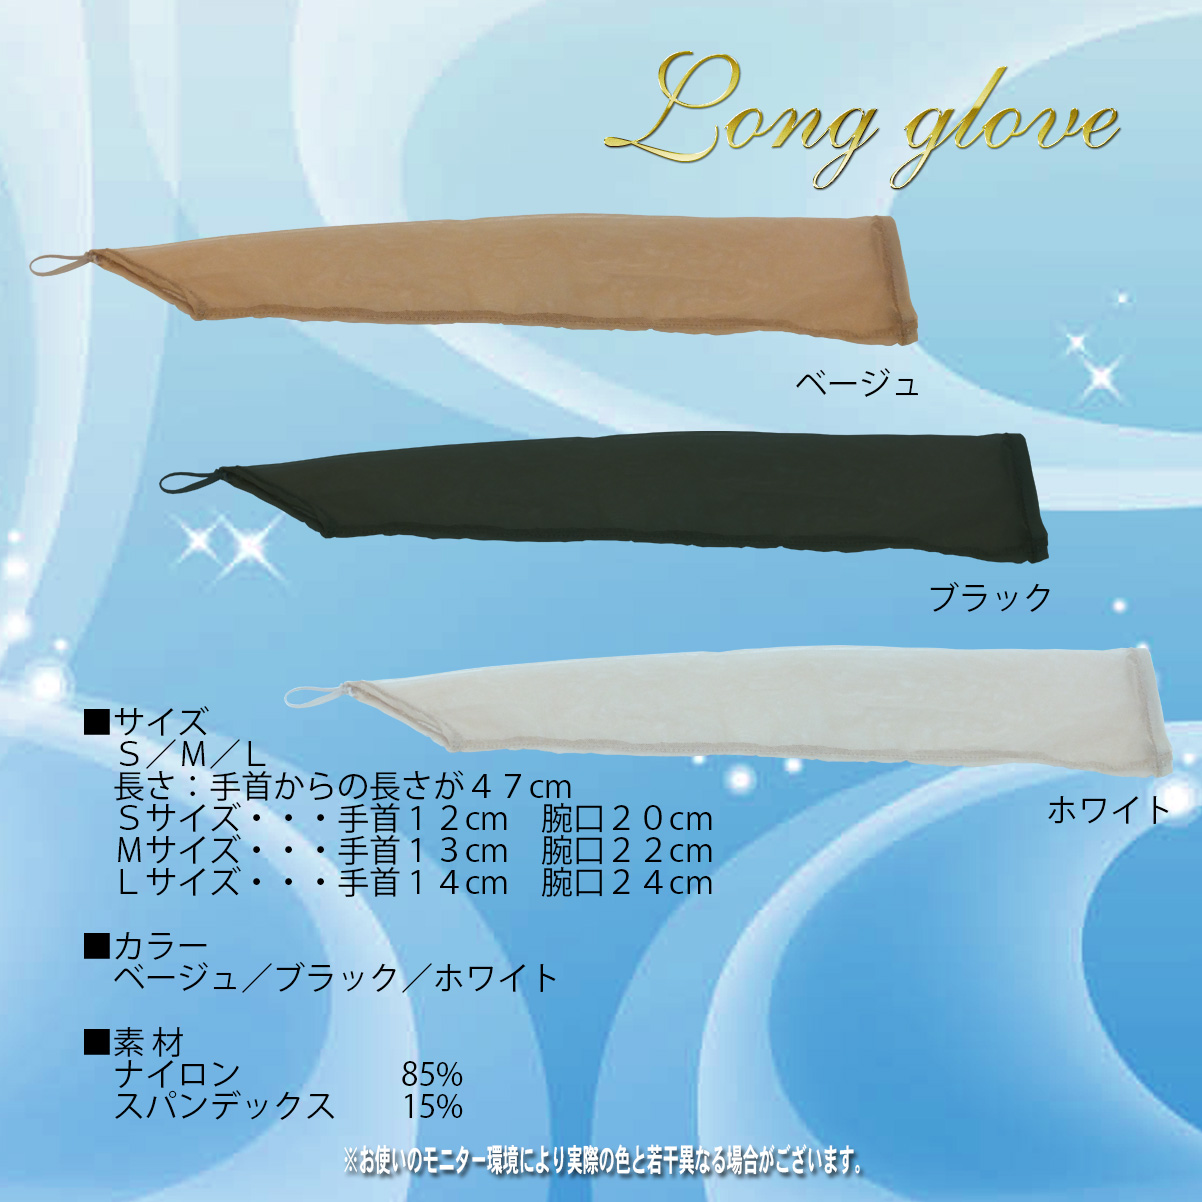 long_glove